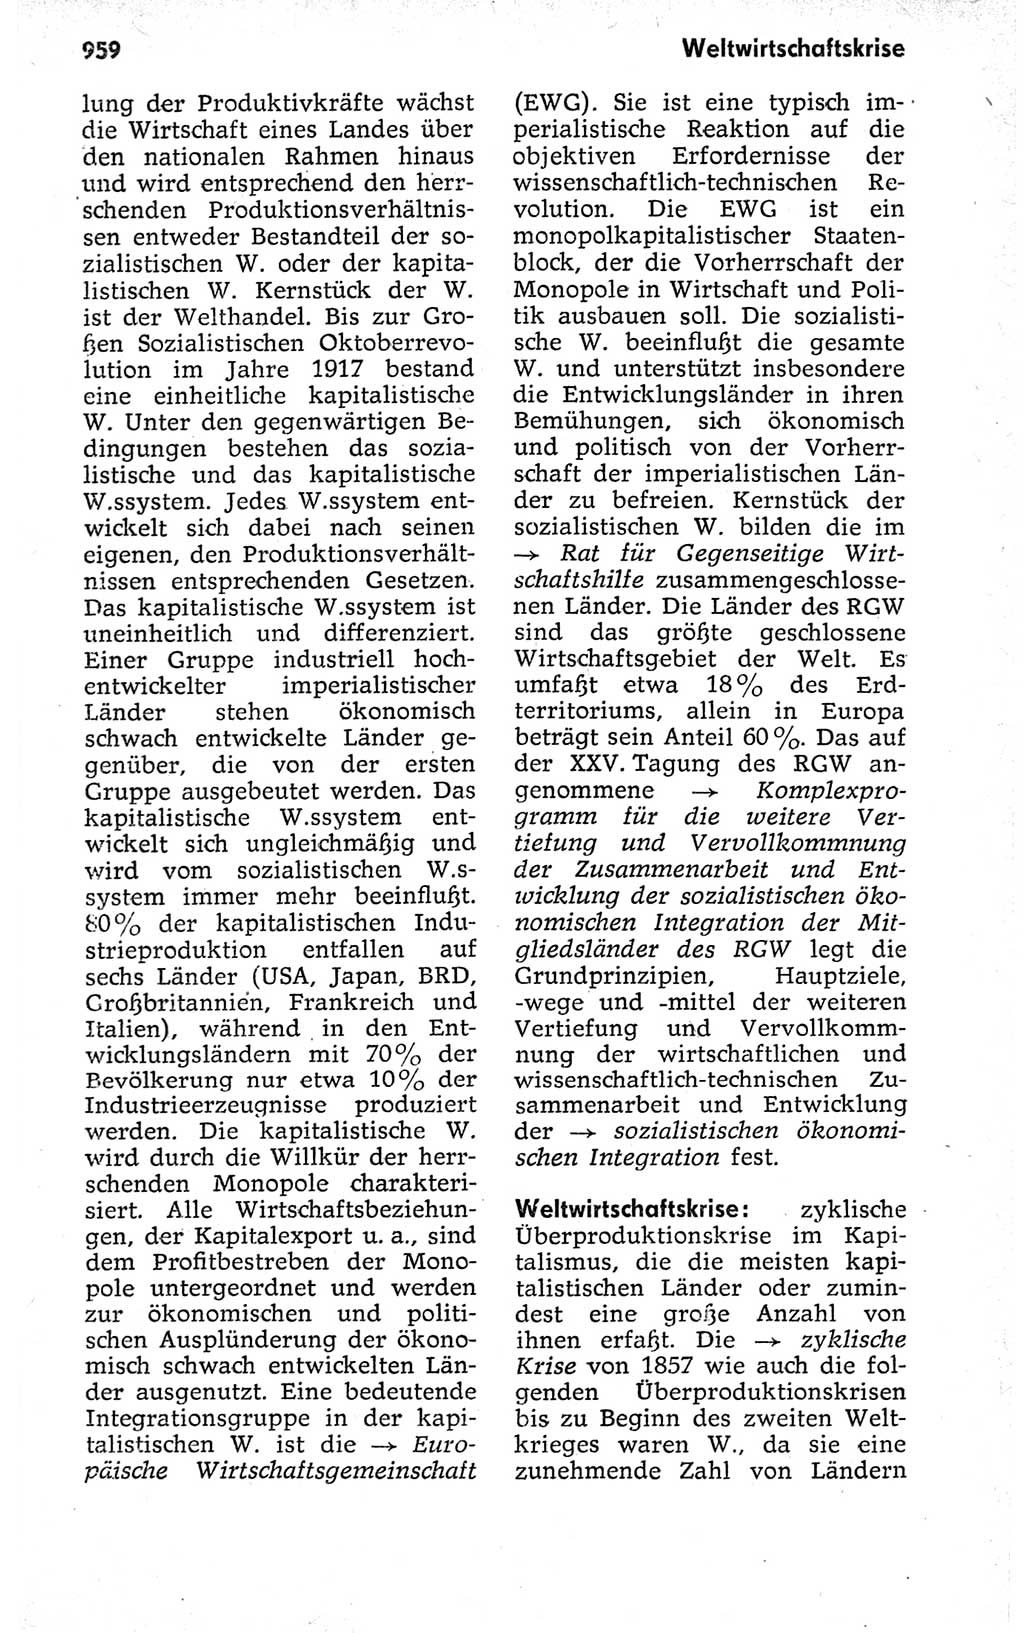 Kleines politisches Wörterbuch [Deutsche Demokratische Republik (DDR)] 1973, Seite 959 (Kl. pol. Wb. DDR 1973, S. 959)